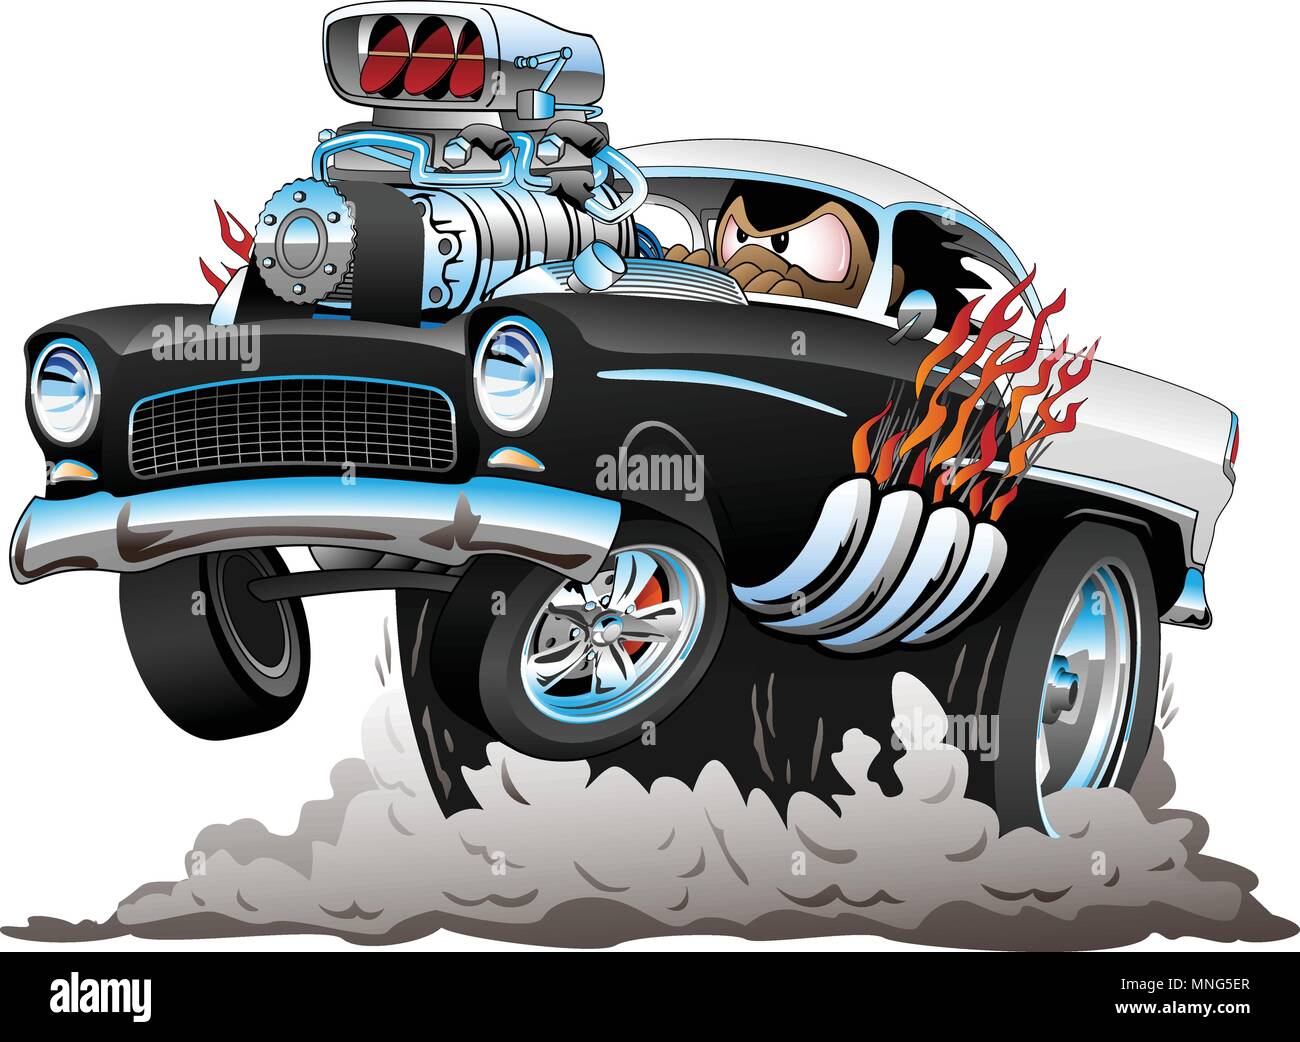 Klassische amerikanische 50er Jahre Style Hot Rod lustig Auto Cartoon mit großen Motor, Flammen, qualmende Reifen, Popping einen Wheelie, Vector Illustration Stock Vektor